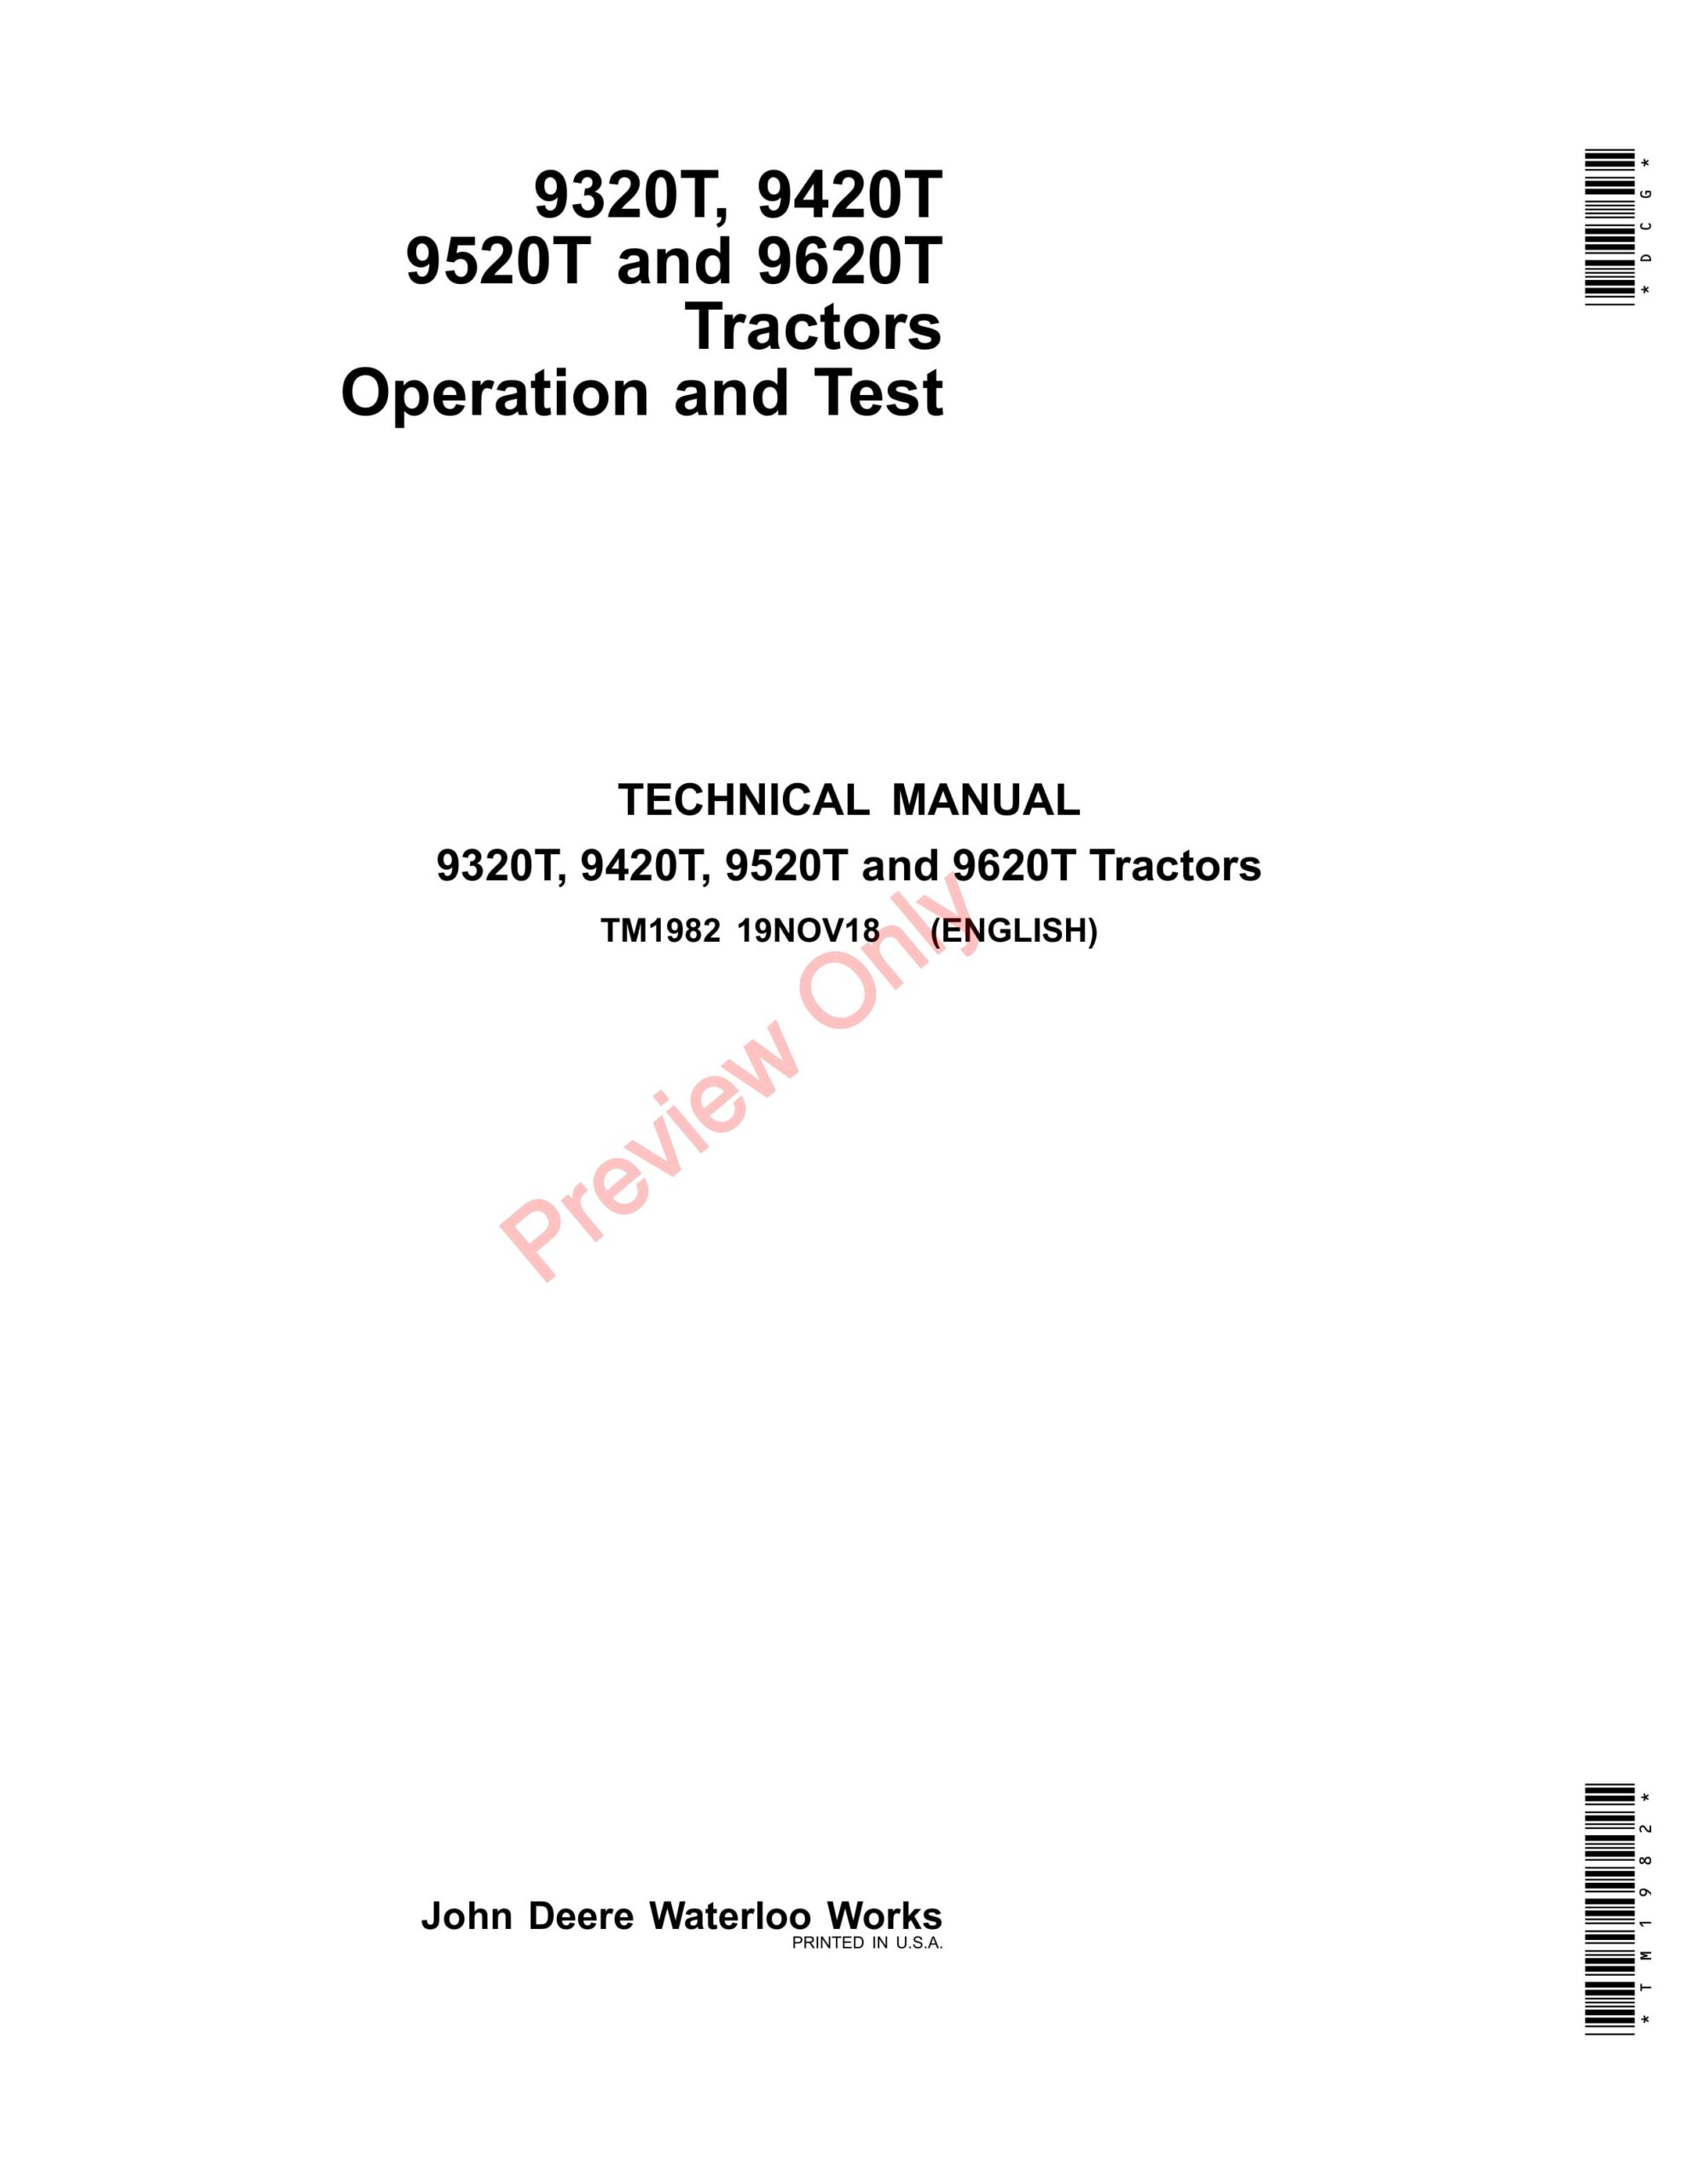 John Deere 9320T, 9420T, 9520T and 9620T Tractors Technical Manual TM1982 19NOV18-1